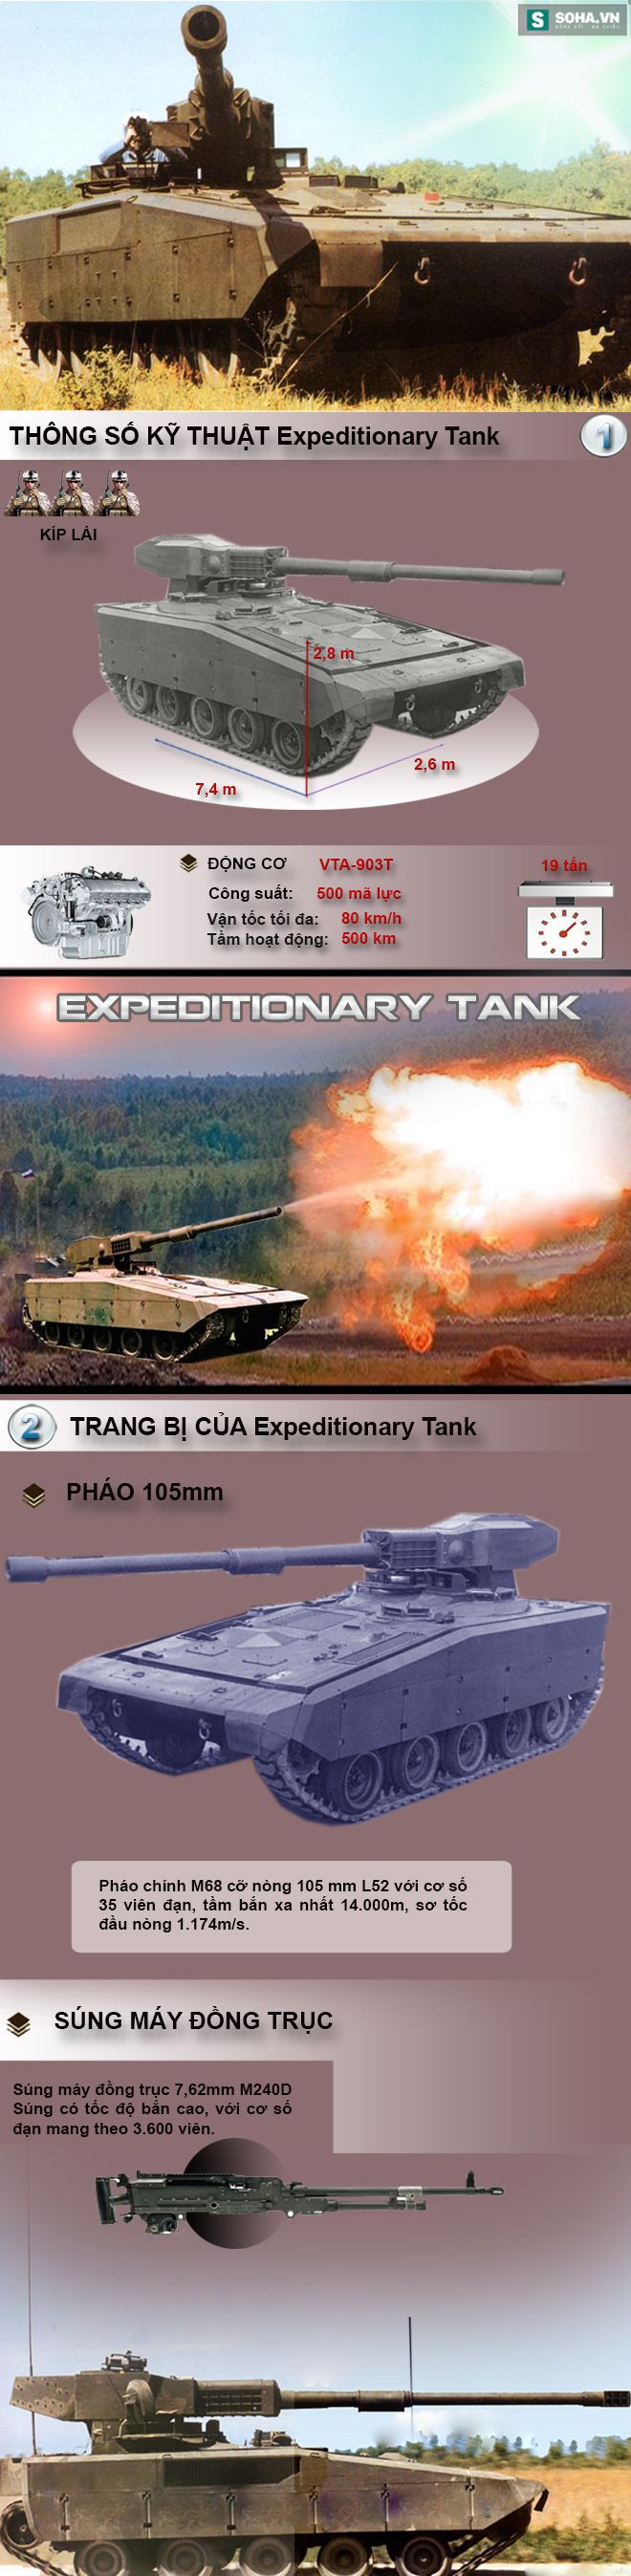 Không phải Armata, đây mới là xe tăng đầu tiên trên thế giới trang bị tháp pháo tự động - Ảnh 1.